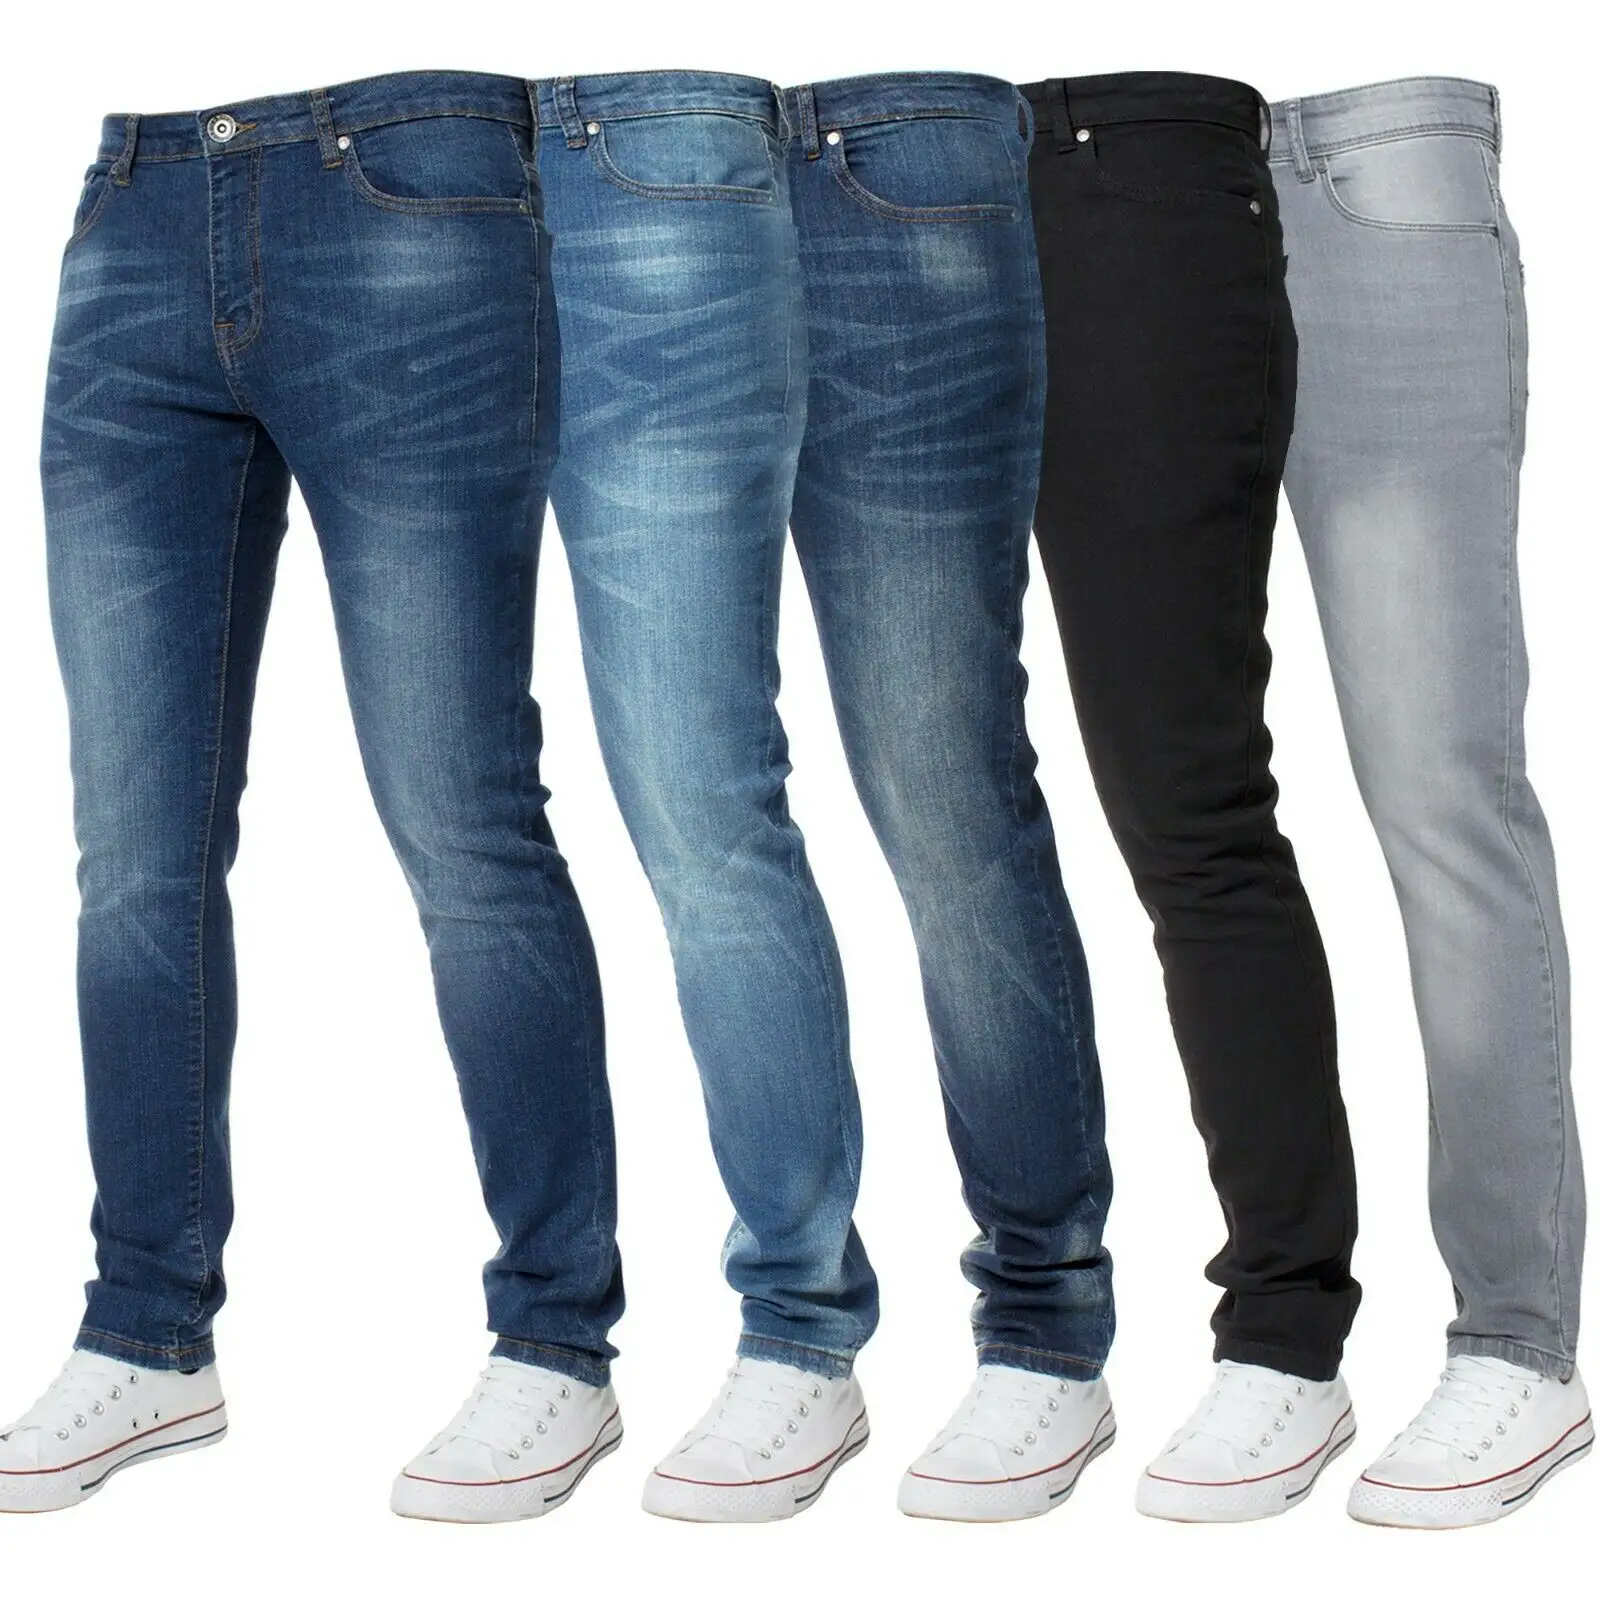 Supplier of international Brands---tapered Jeans men Skinny custom jeans men Ripped denim men jeans trouser